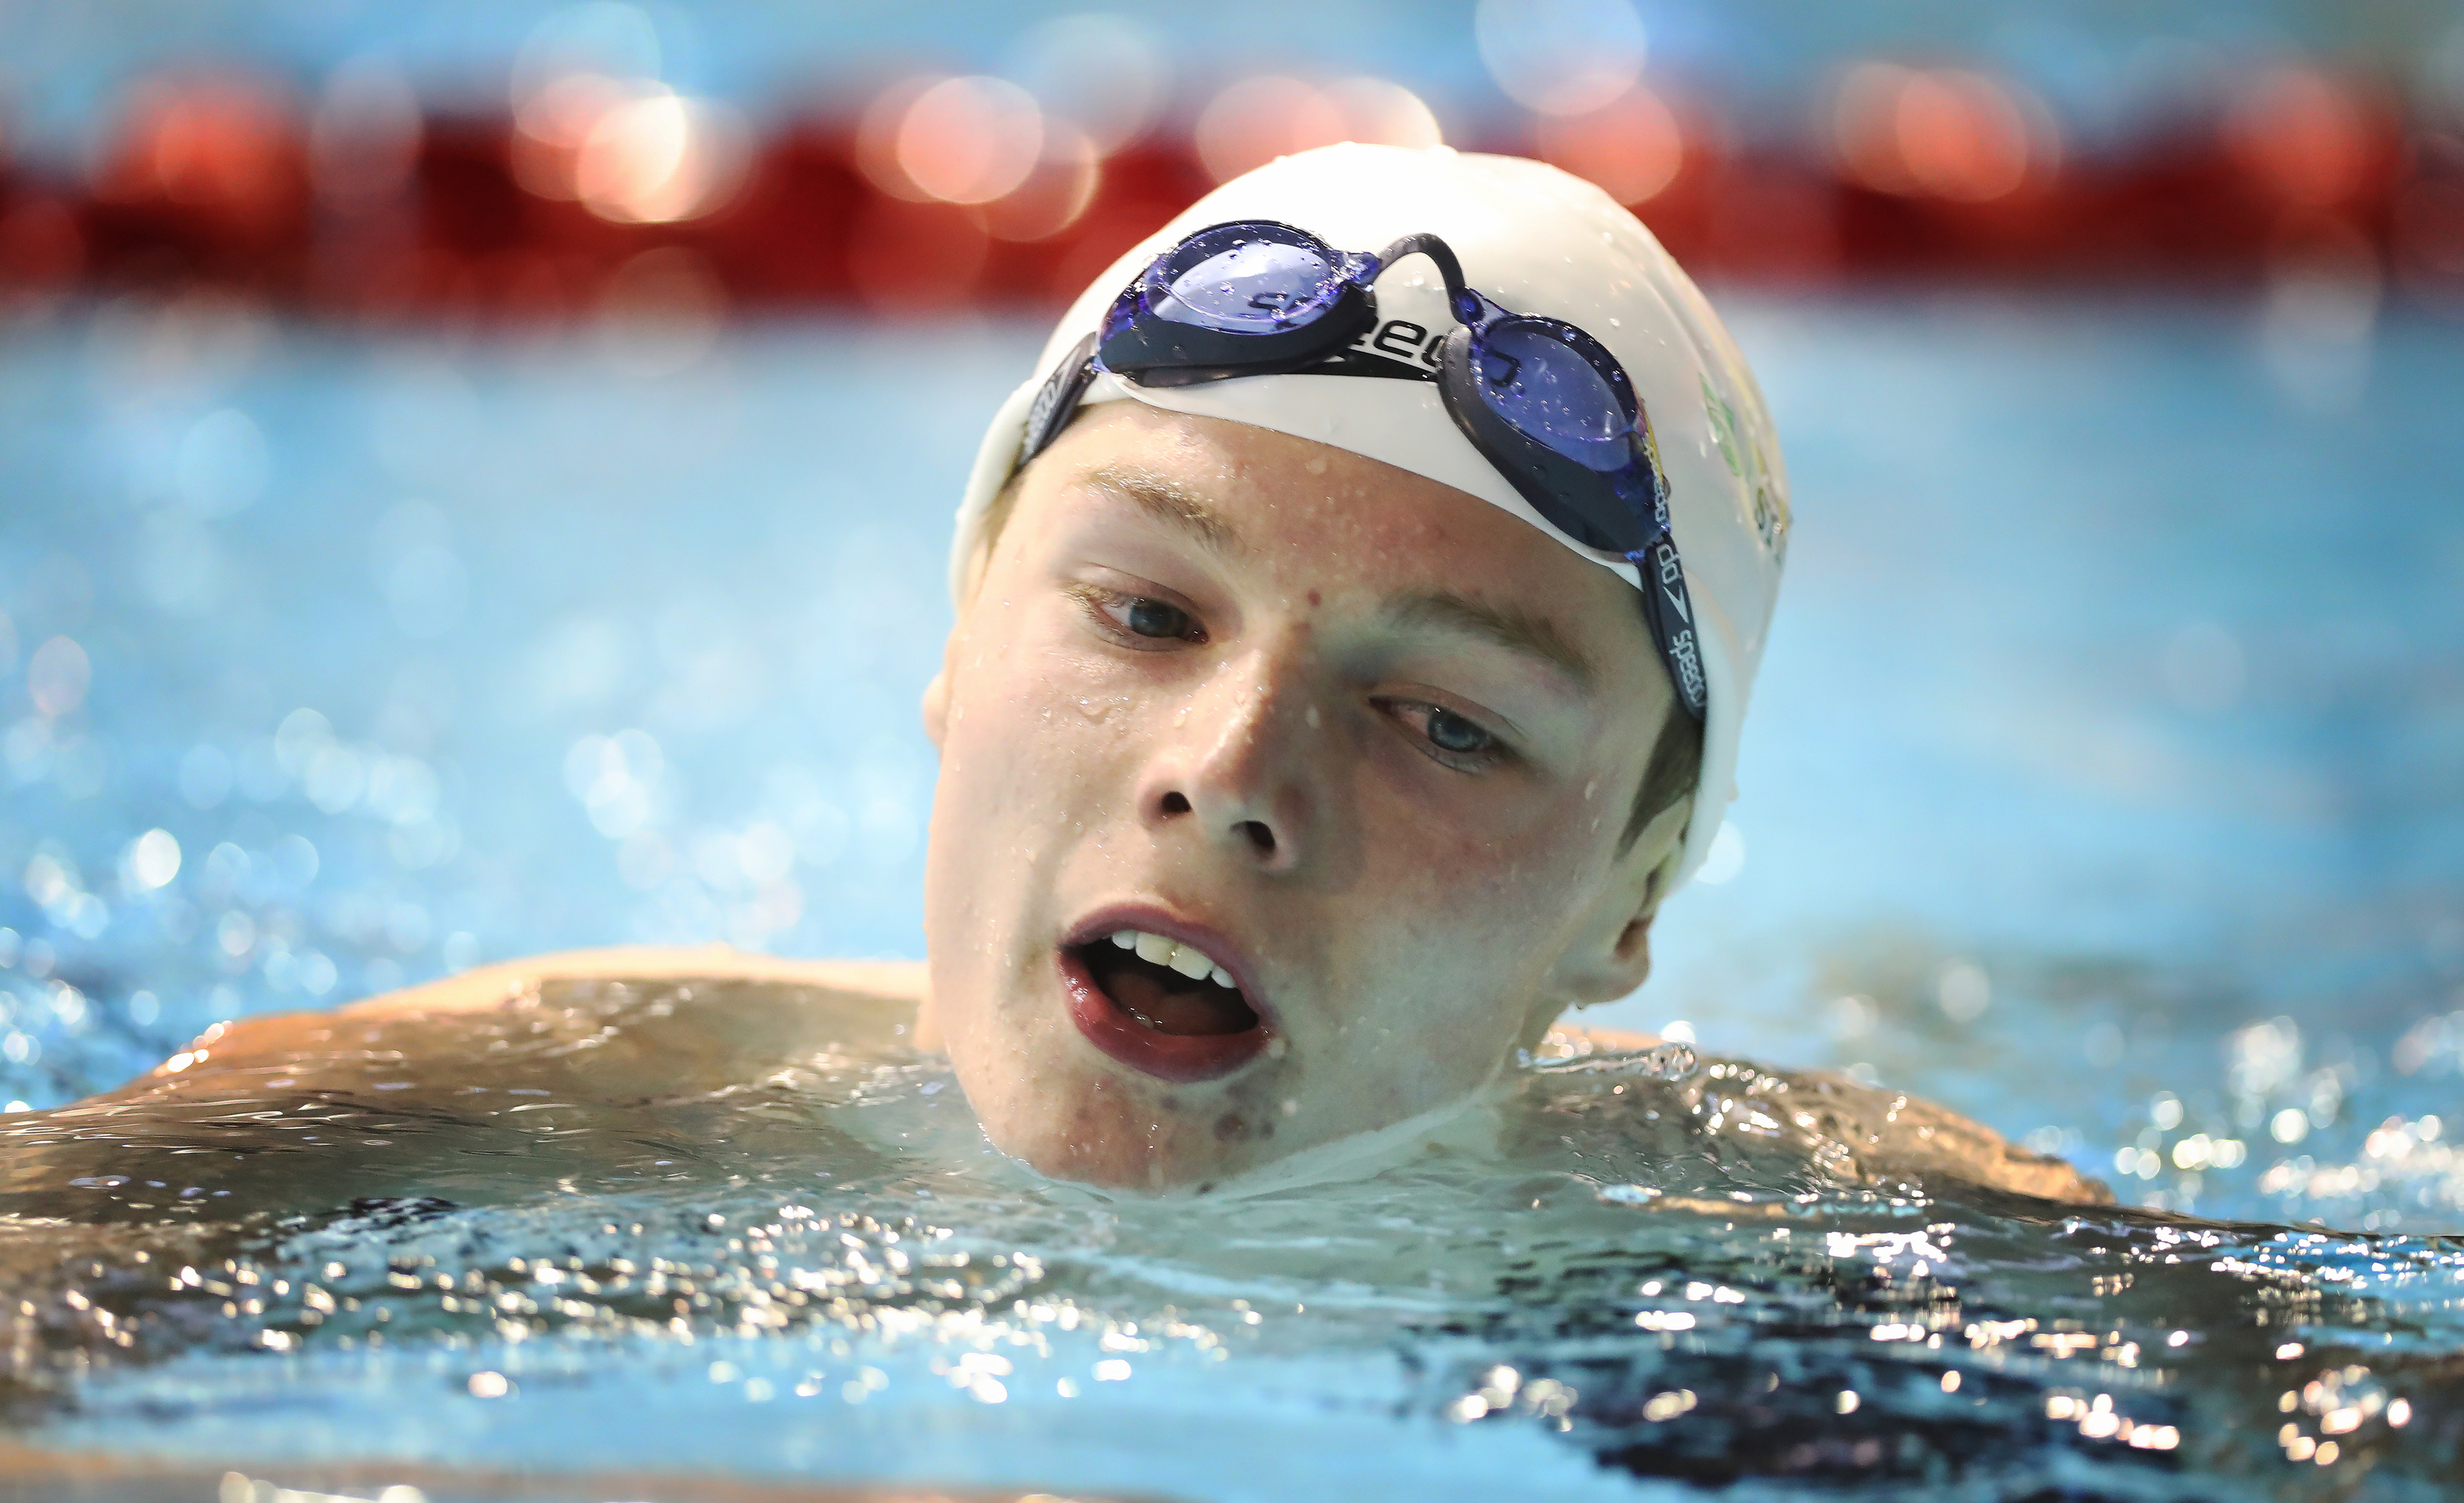 Swimmer Duncan Scott